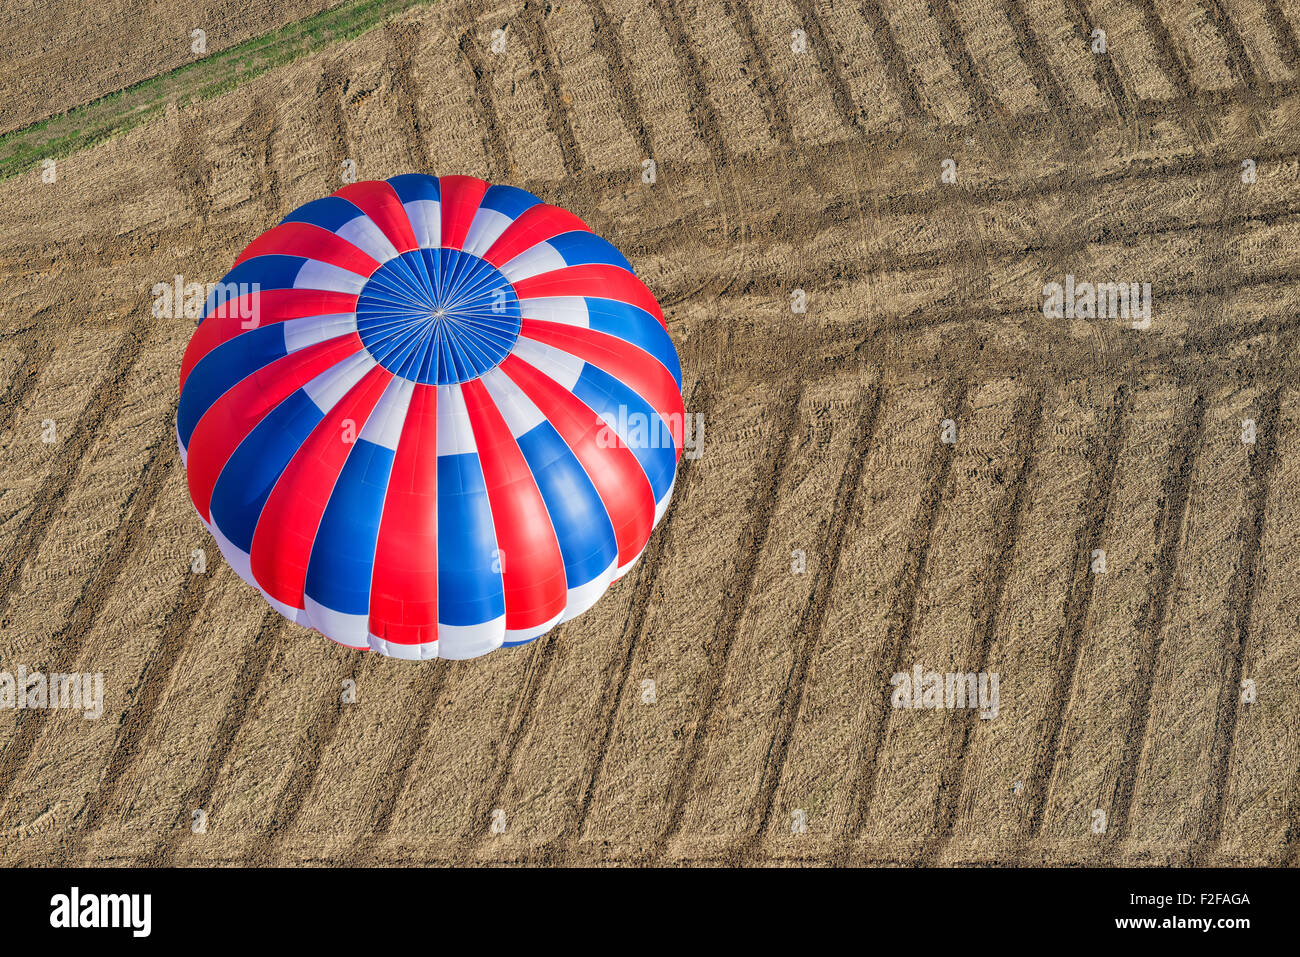 Vista aeriel di una mongolfiera volare su un campo strippato Foto Stock